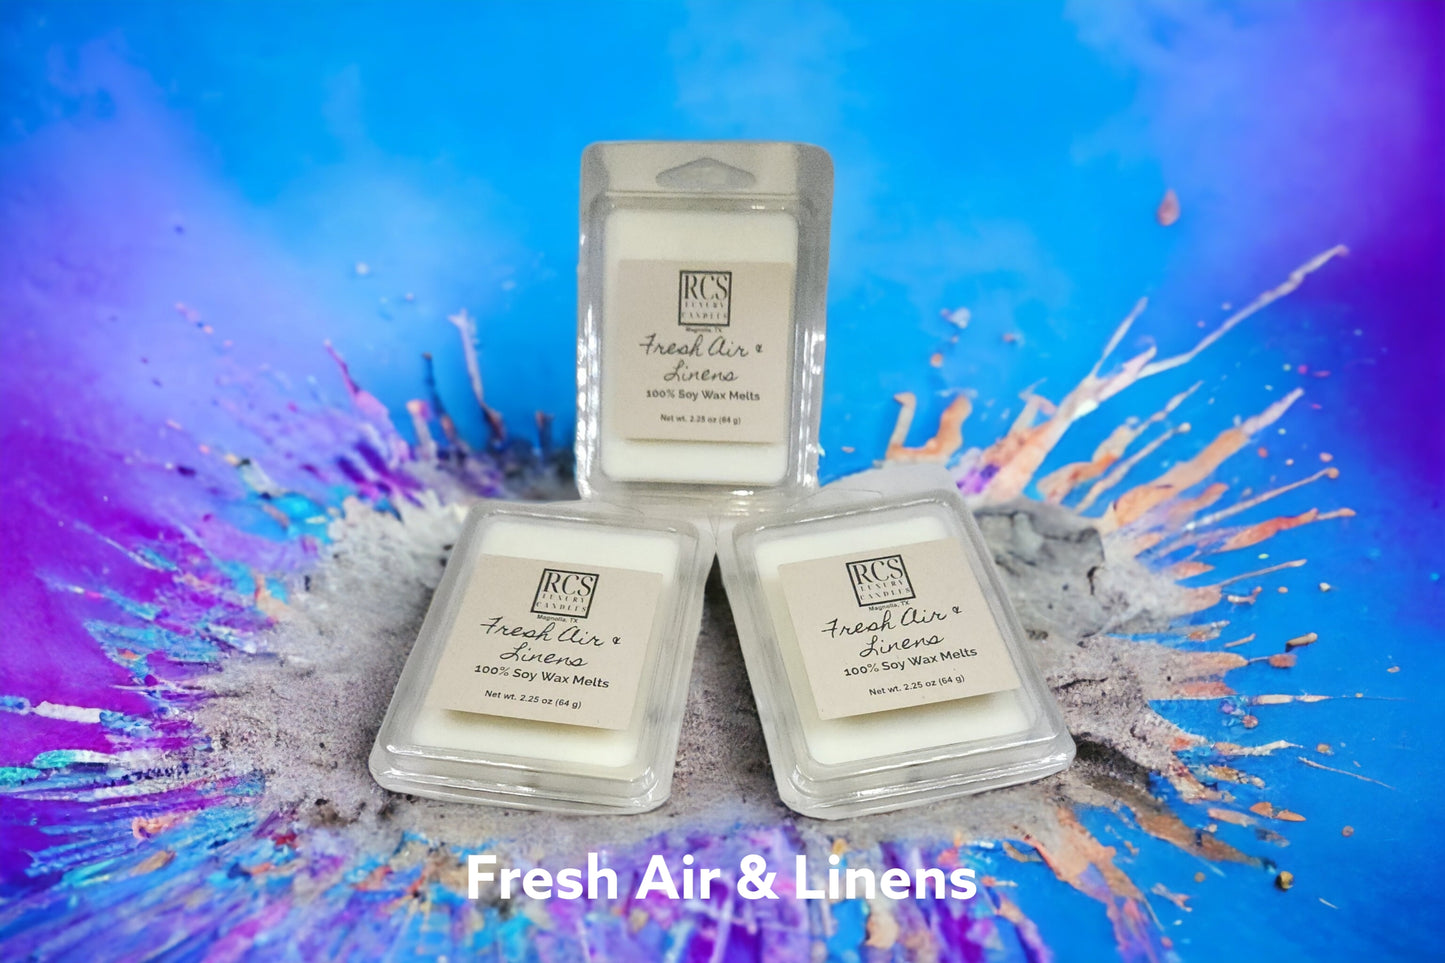 Fresh Air & Linens Wax Melts